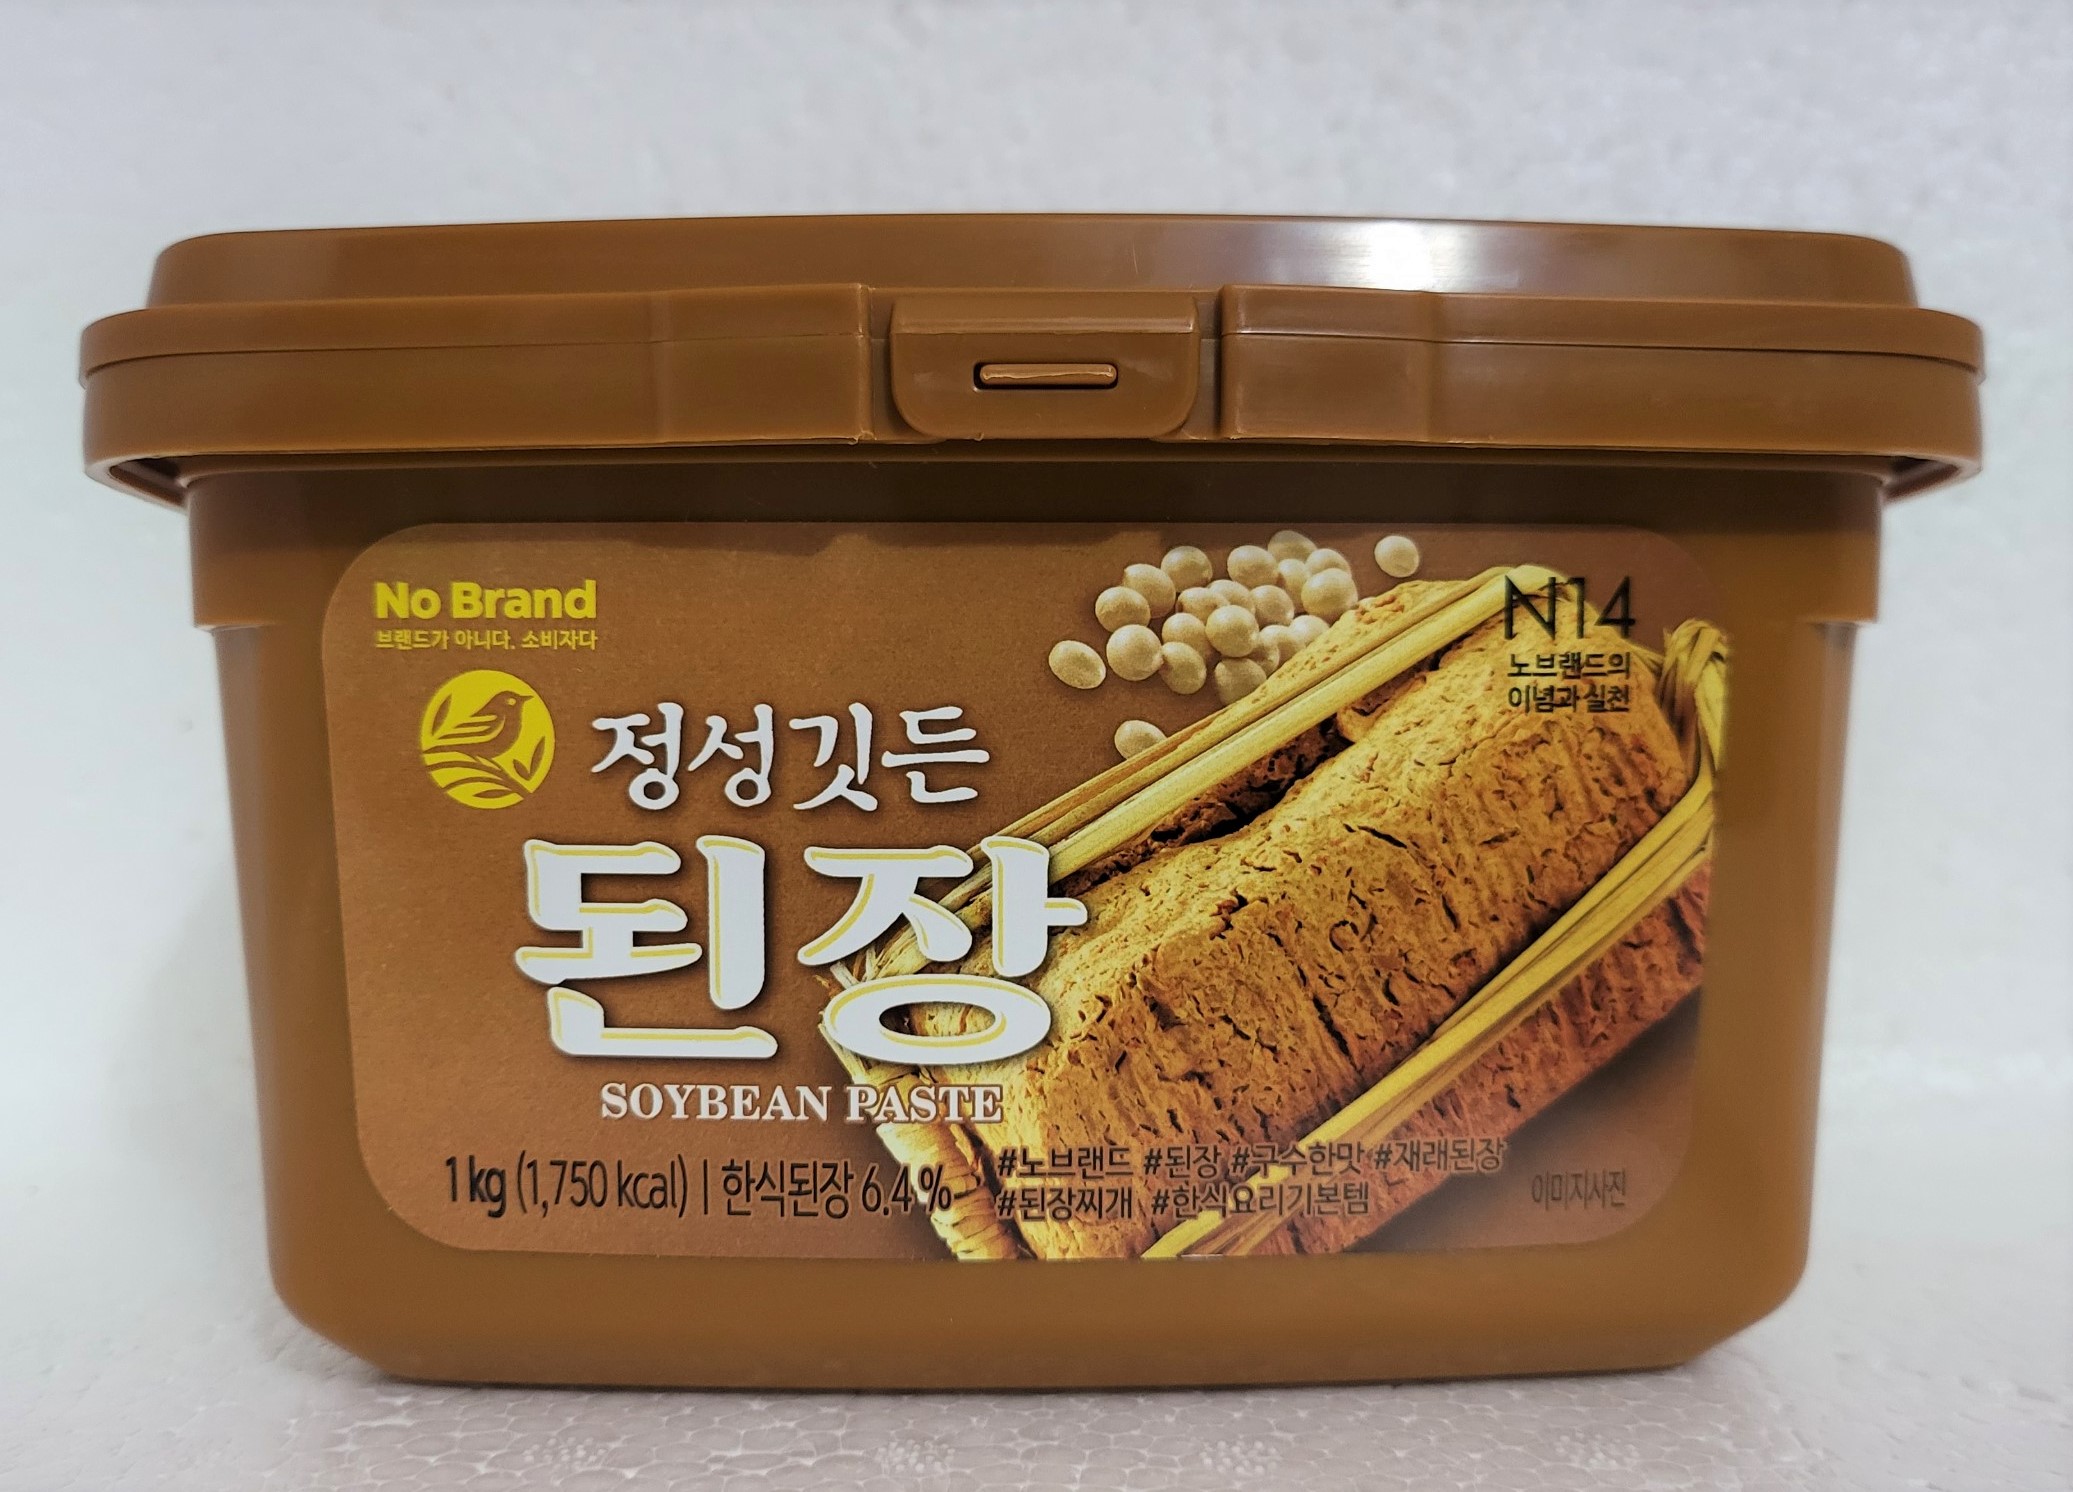 HỘP NÂU LỚN 1KG TƯƠNG ĐẬU LÊN MEN Korea NO BRAND Soybean Paste